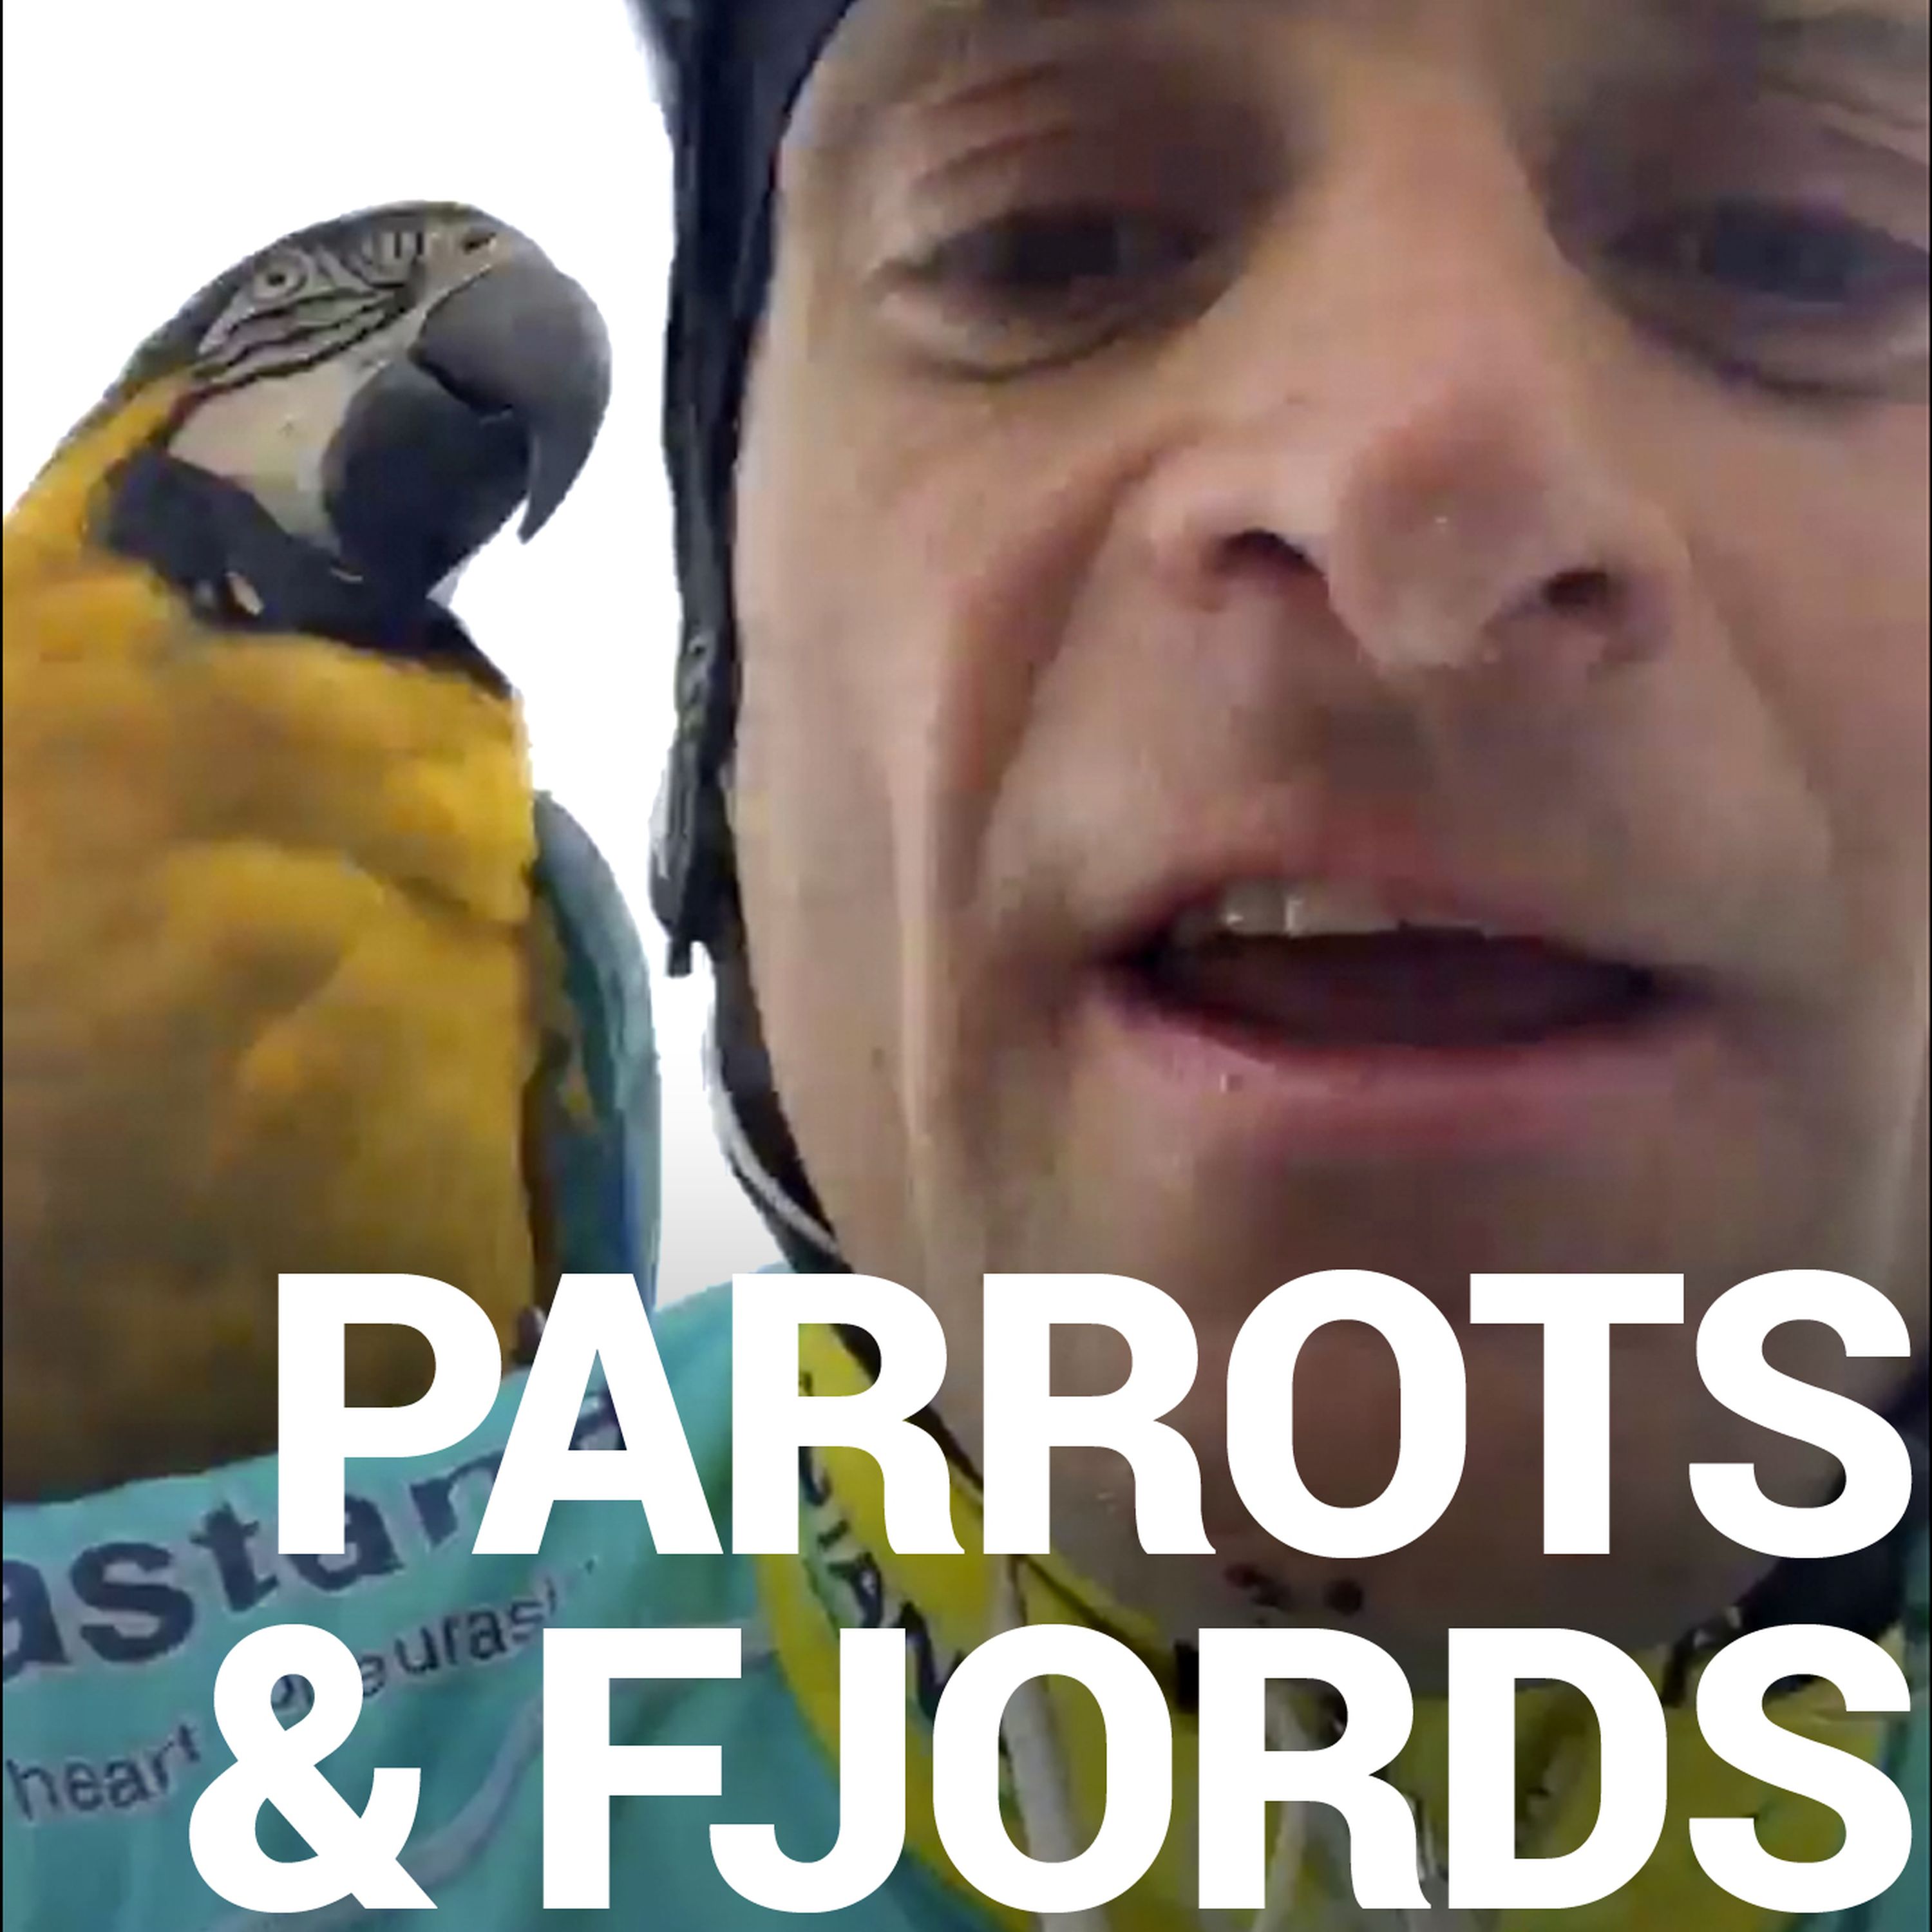 PARROTS & FJORDS